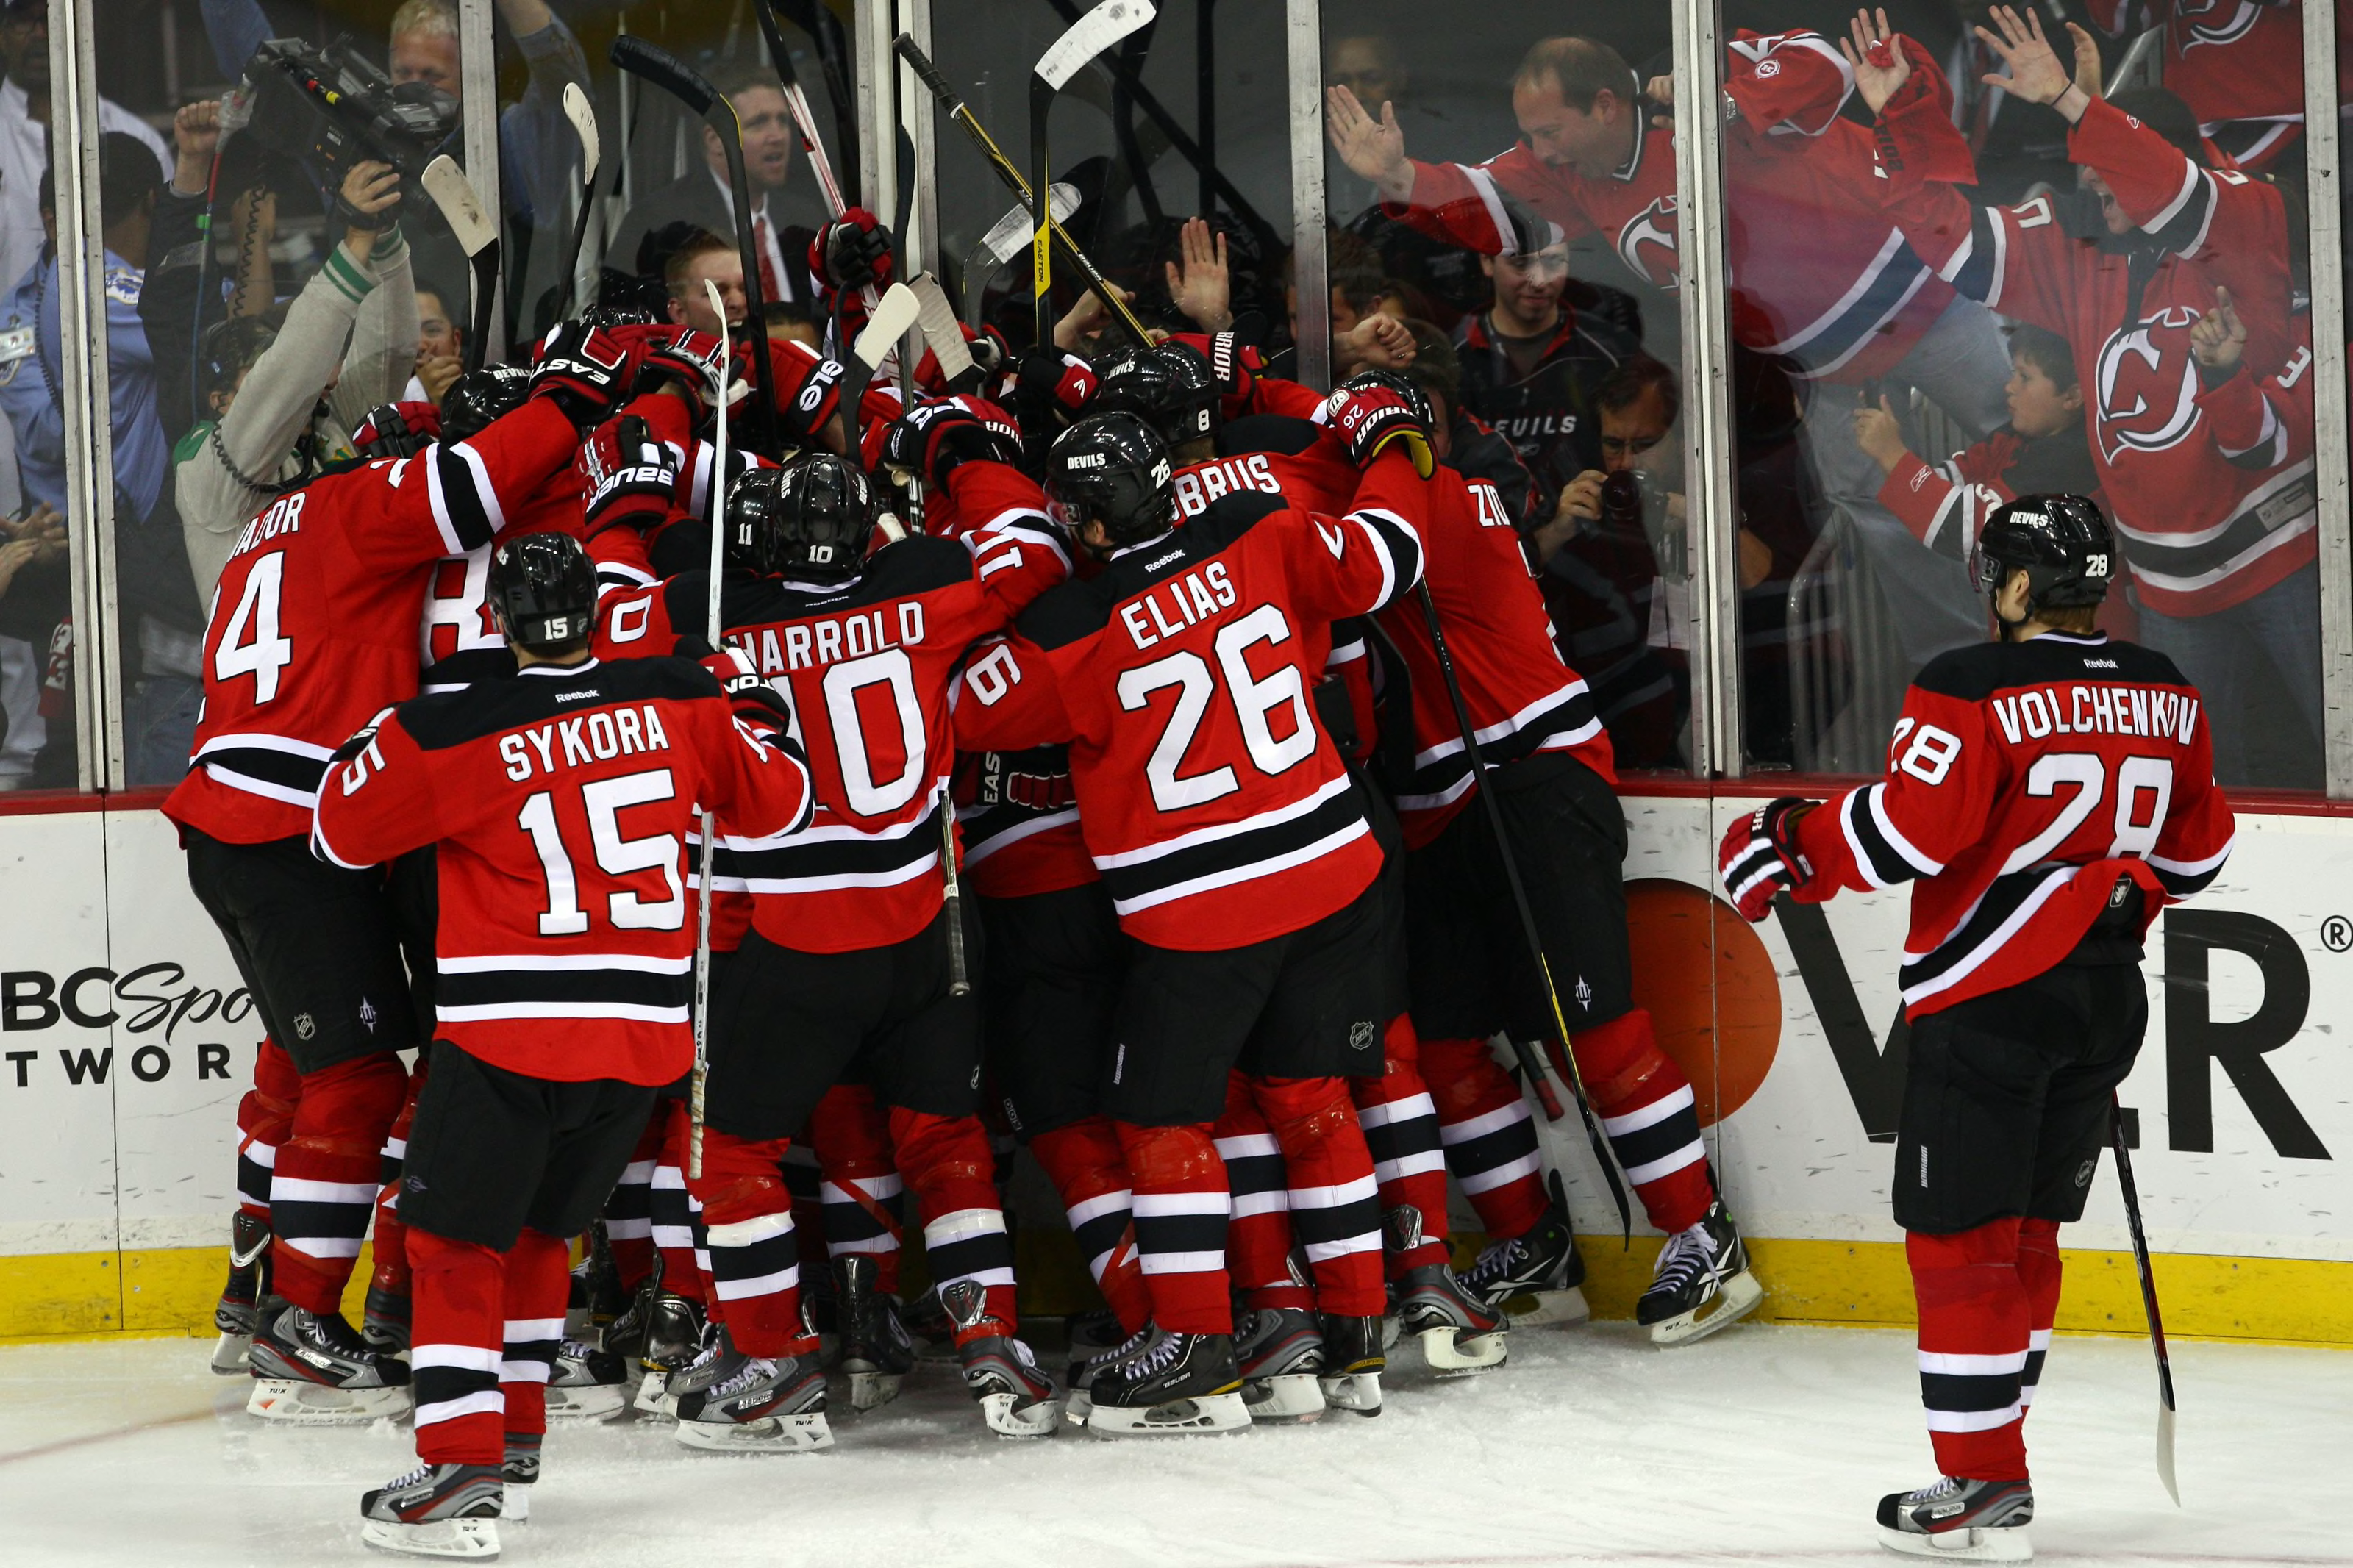 NJ Devils beat Philadelphia Flyers in black jersey debut